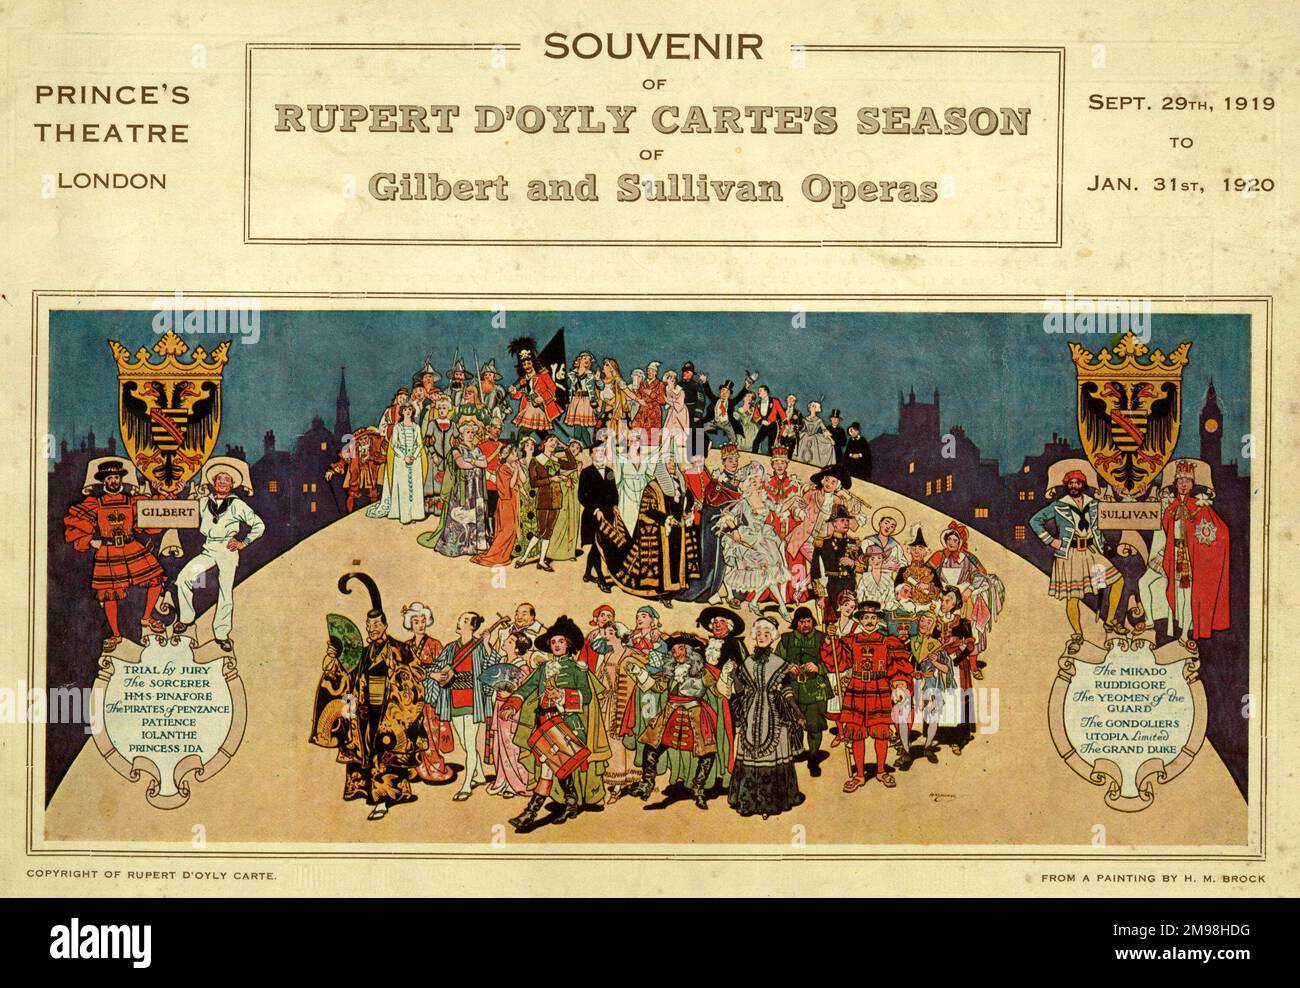 D'Oyly carte's Season of Gilbert and Sullivan Operas, programma souvenir, Prince's Theatre, Londra, 29 settembre 1919 - 31 gennaio 1920, con un grande cast di personaggi delle operette. Foto Stock